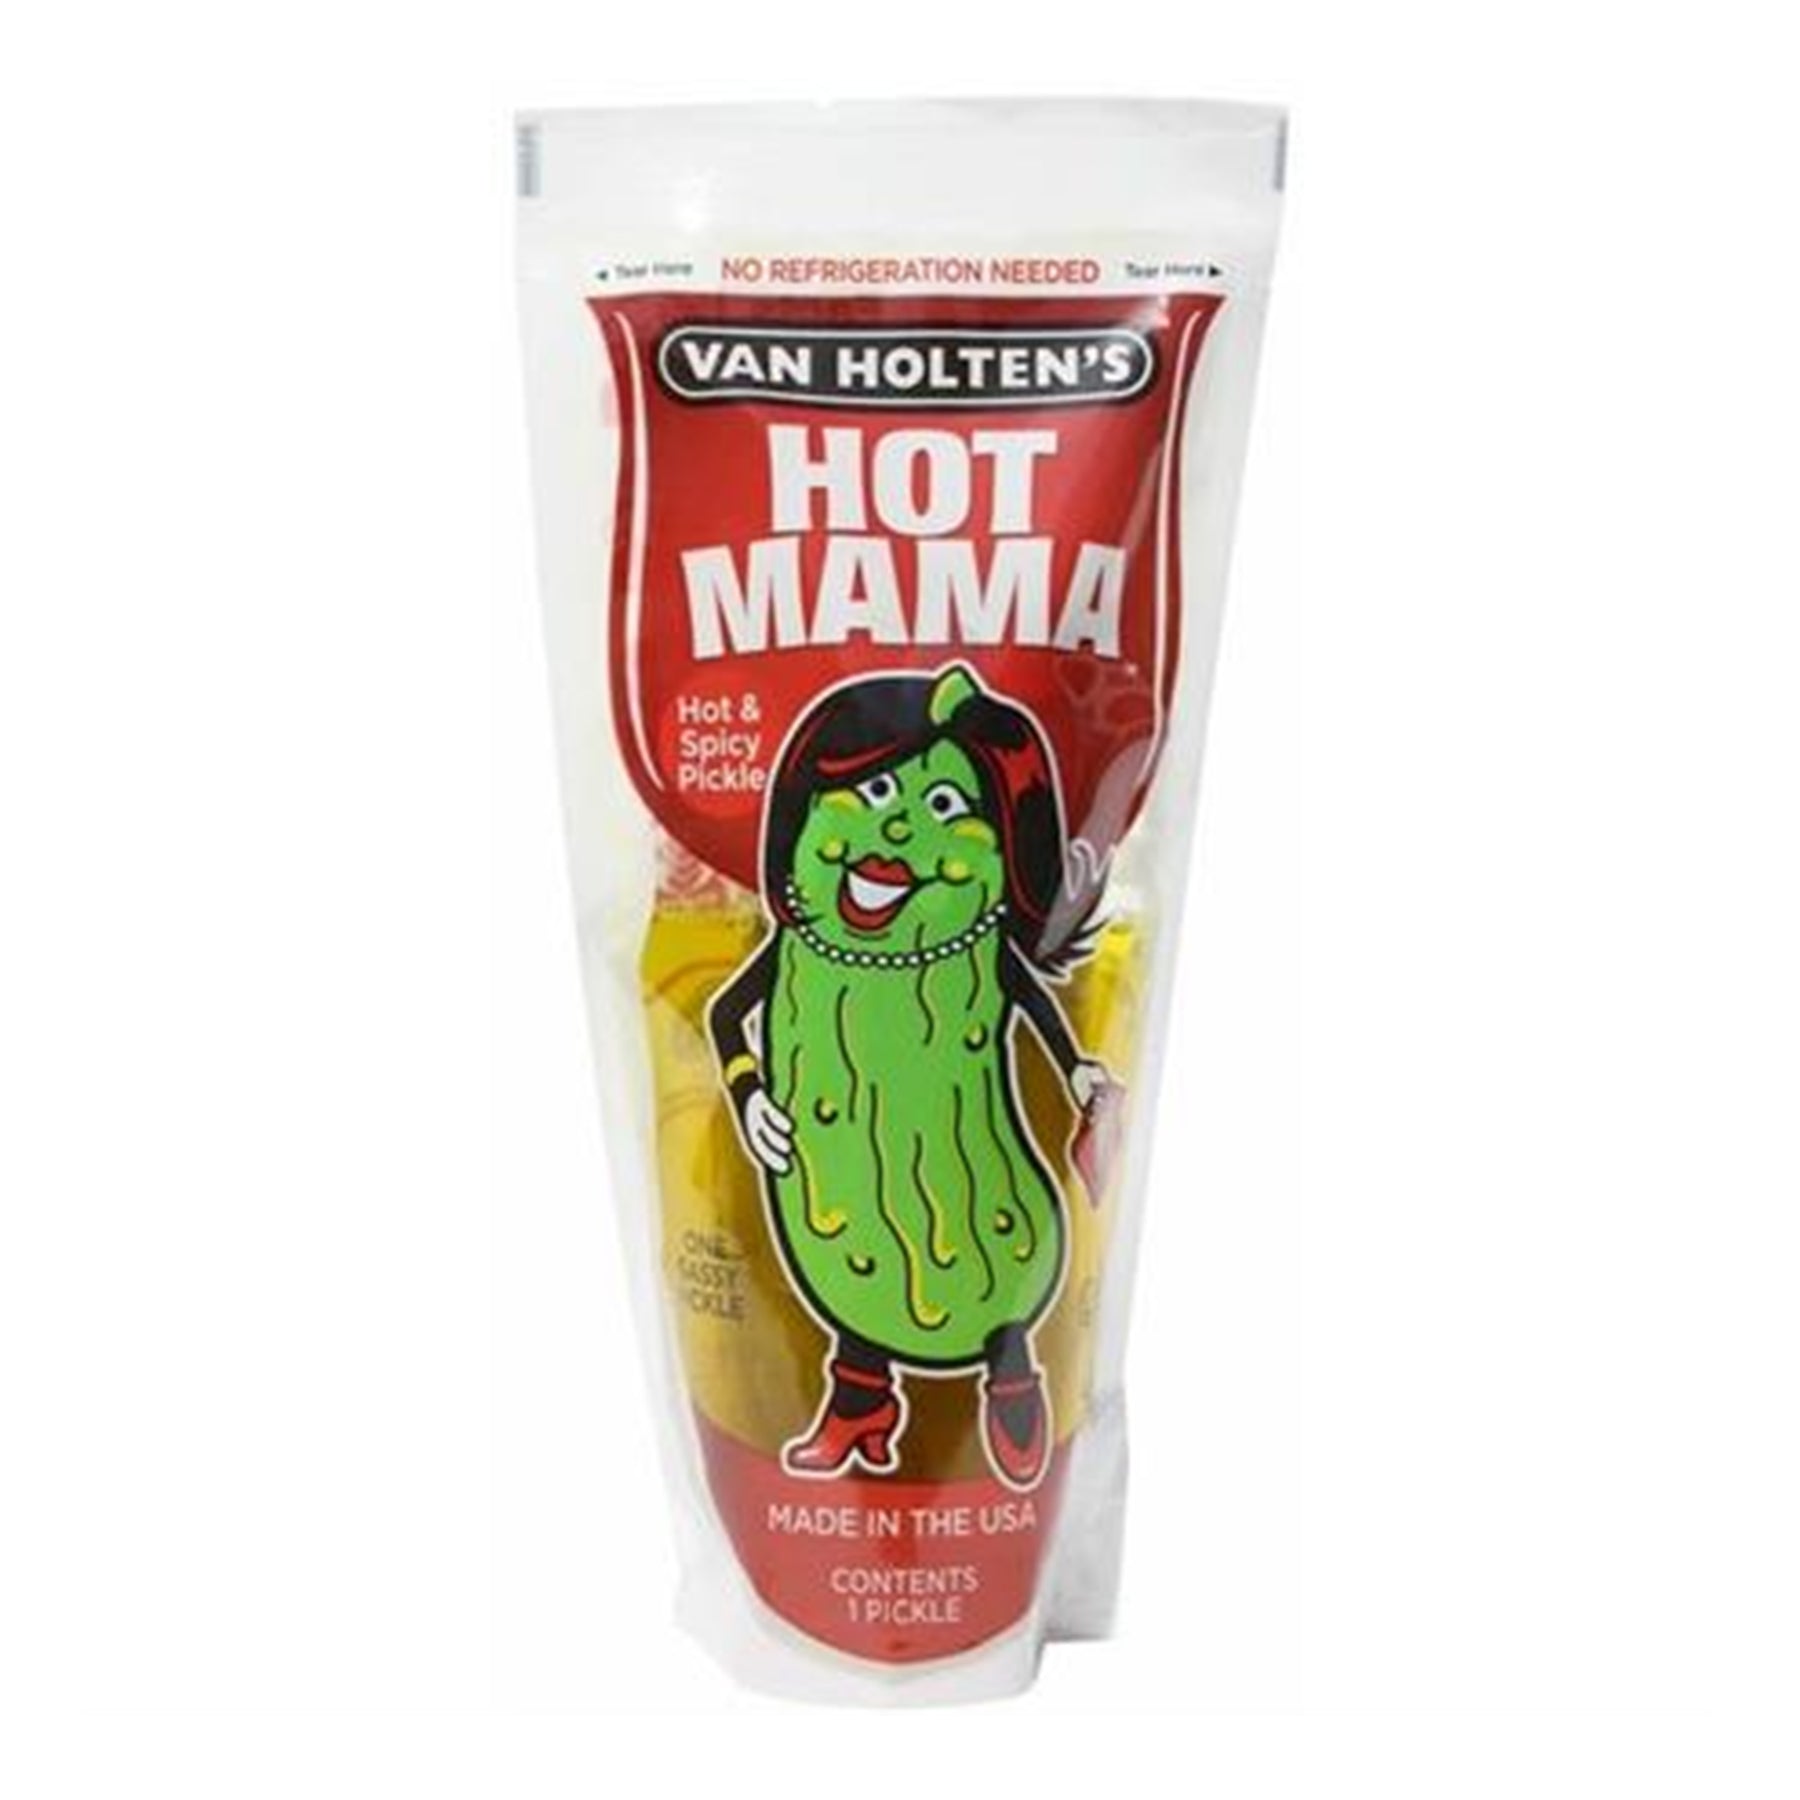 Van Holten Hot Mama Pickle 196 g